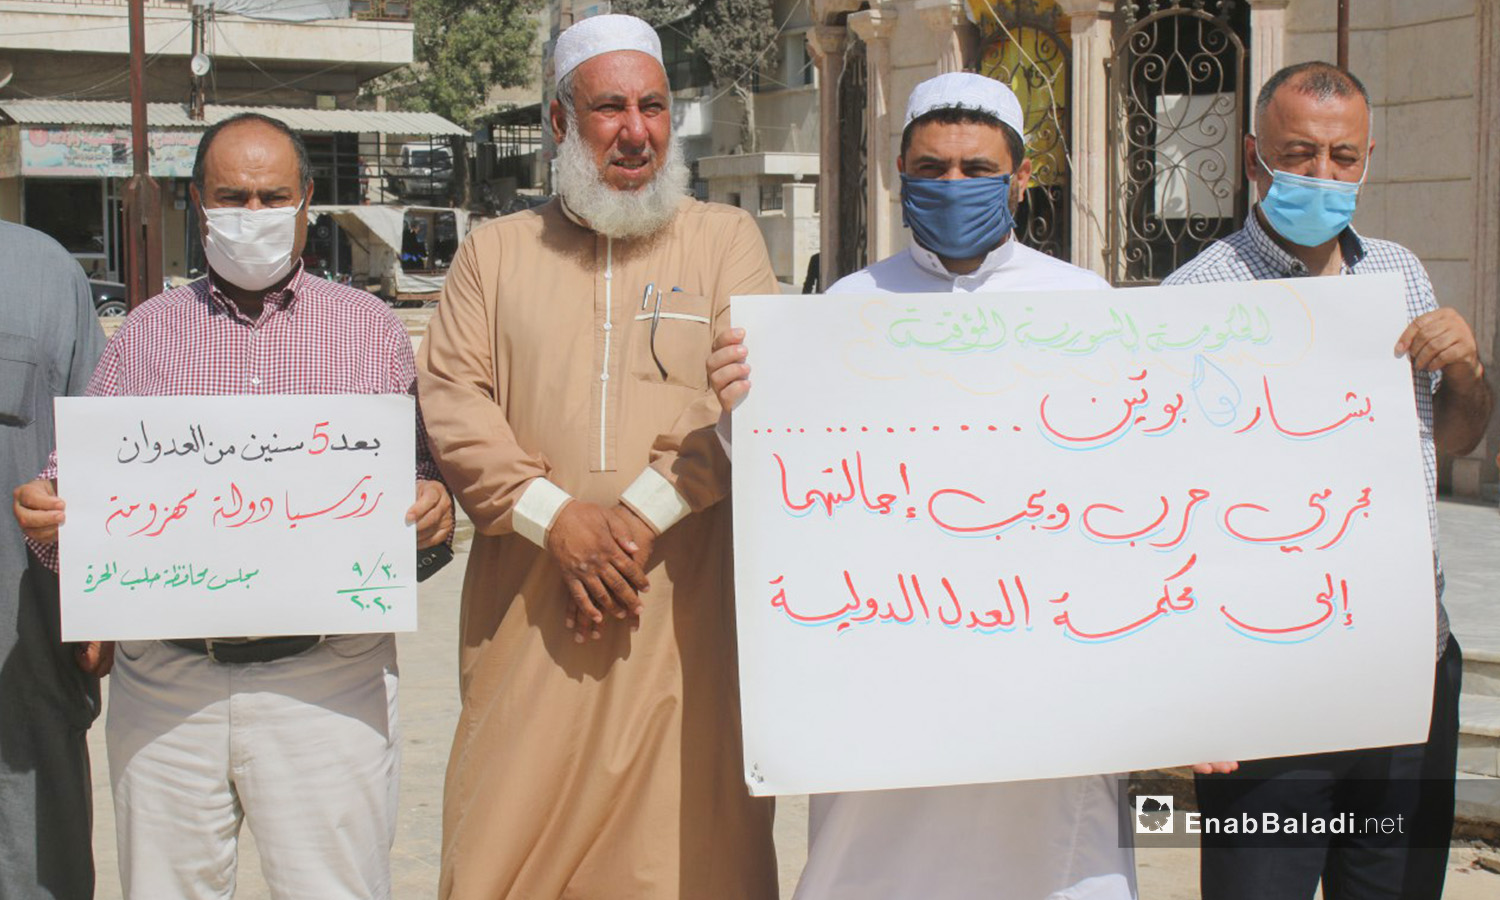 وقفة احتجاجية بمدينة اعزاز في الذكرى الخامسة للتدخل الروسي في سوريا - 30 أيلول 2020 (عنب بلدي / عبد السلام مجعان)